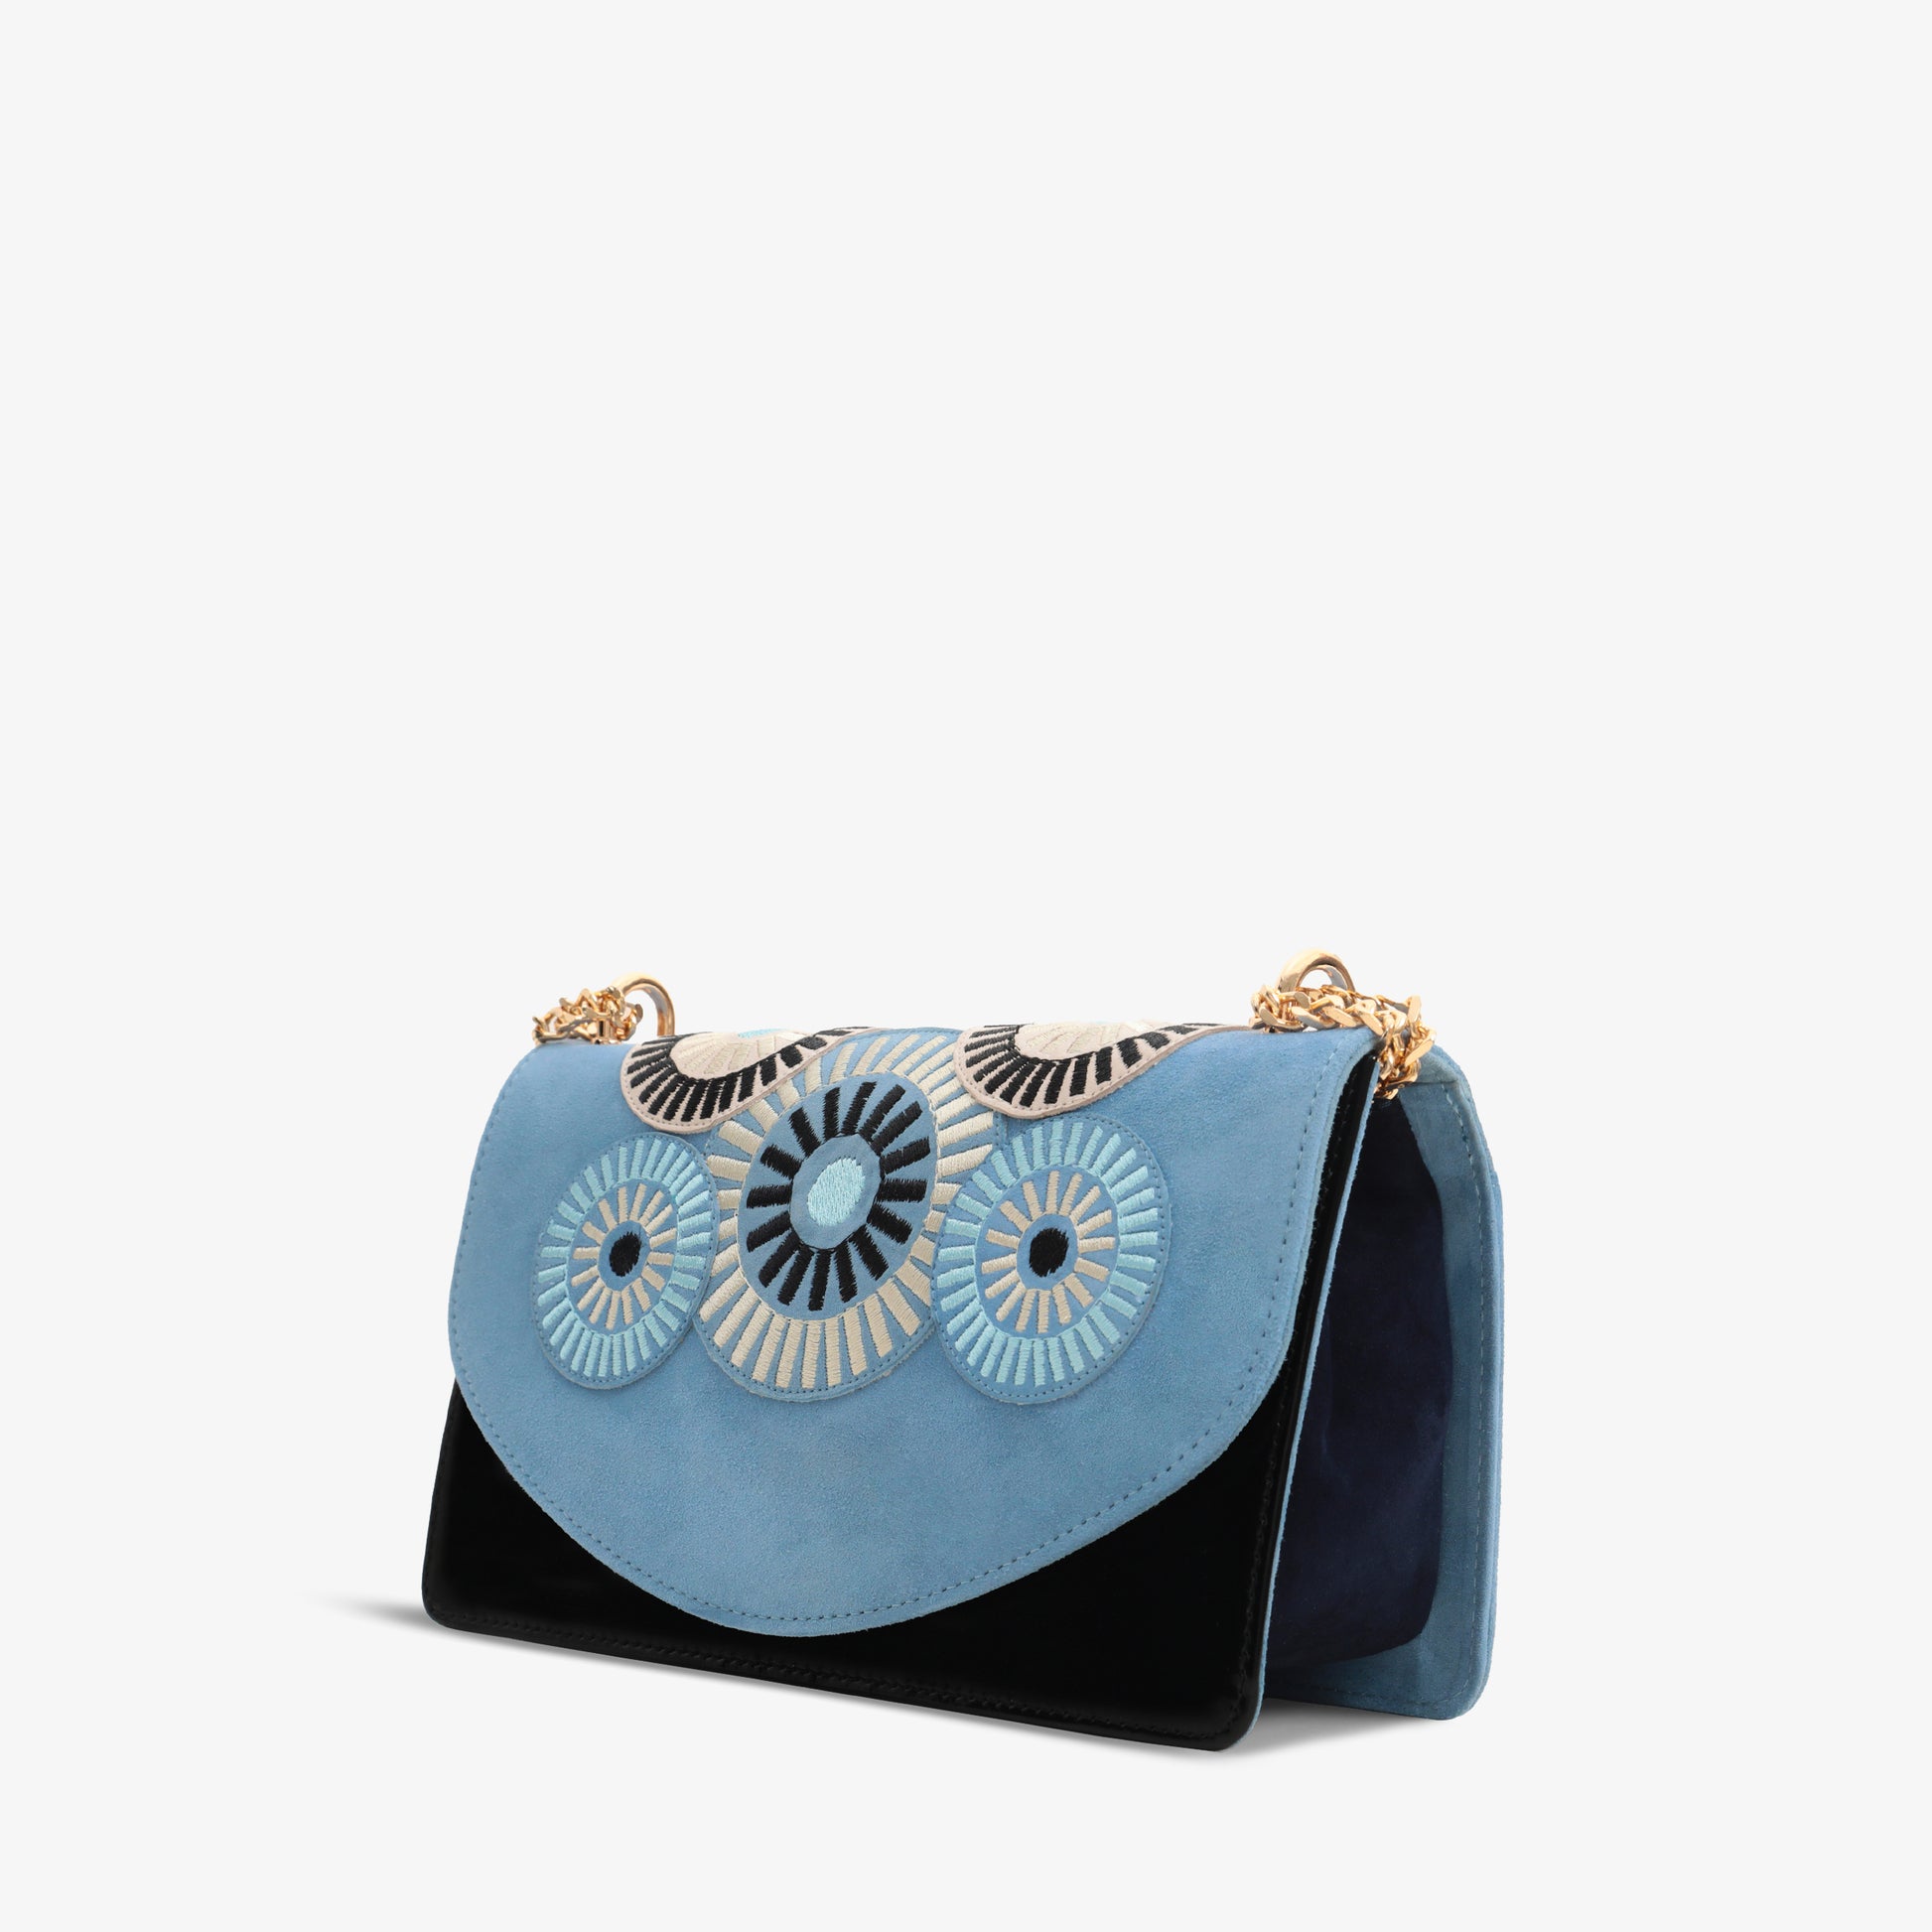 10 Embellished Handbag Straps to Update Your Purse - Brit + Co